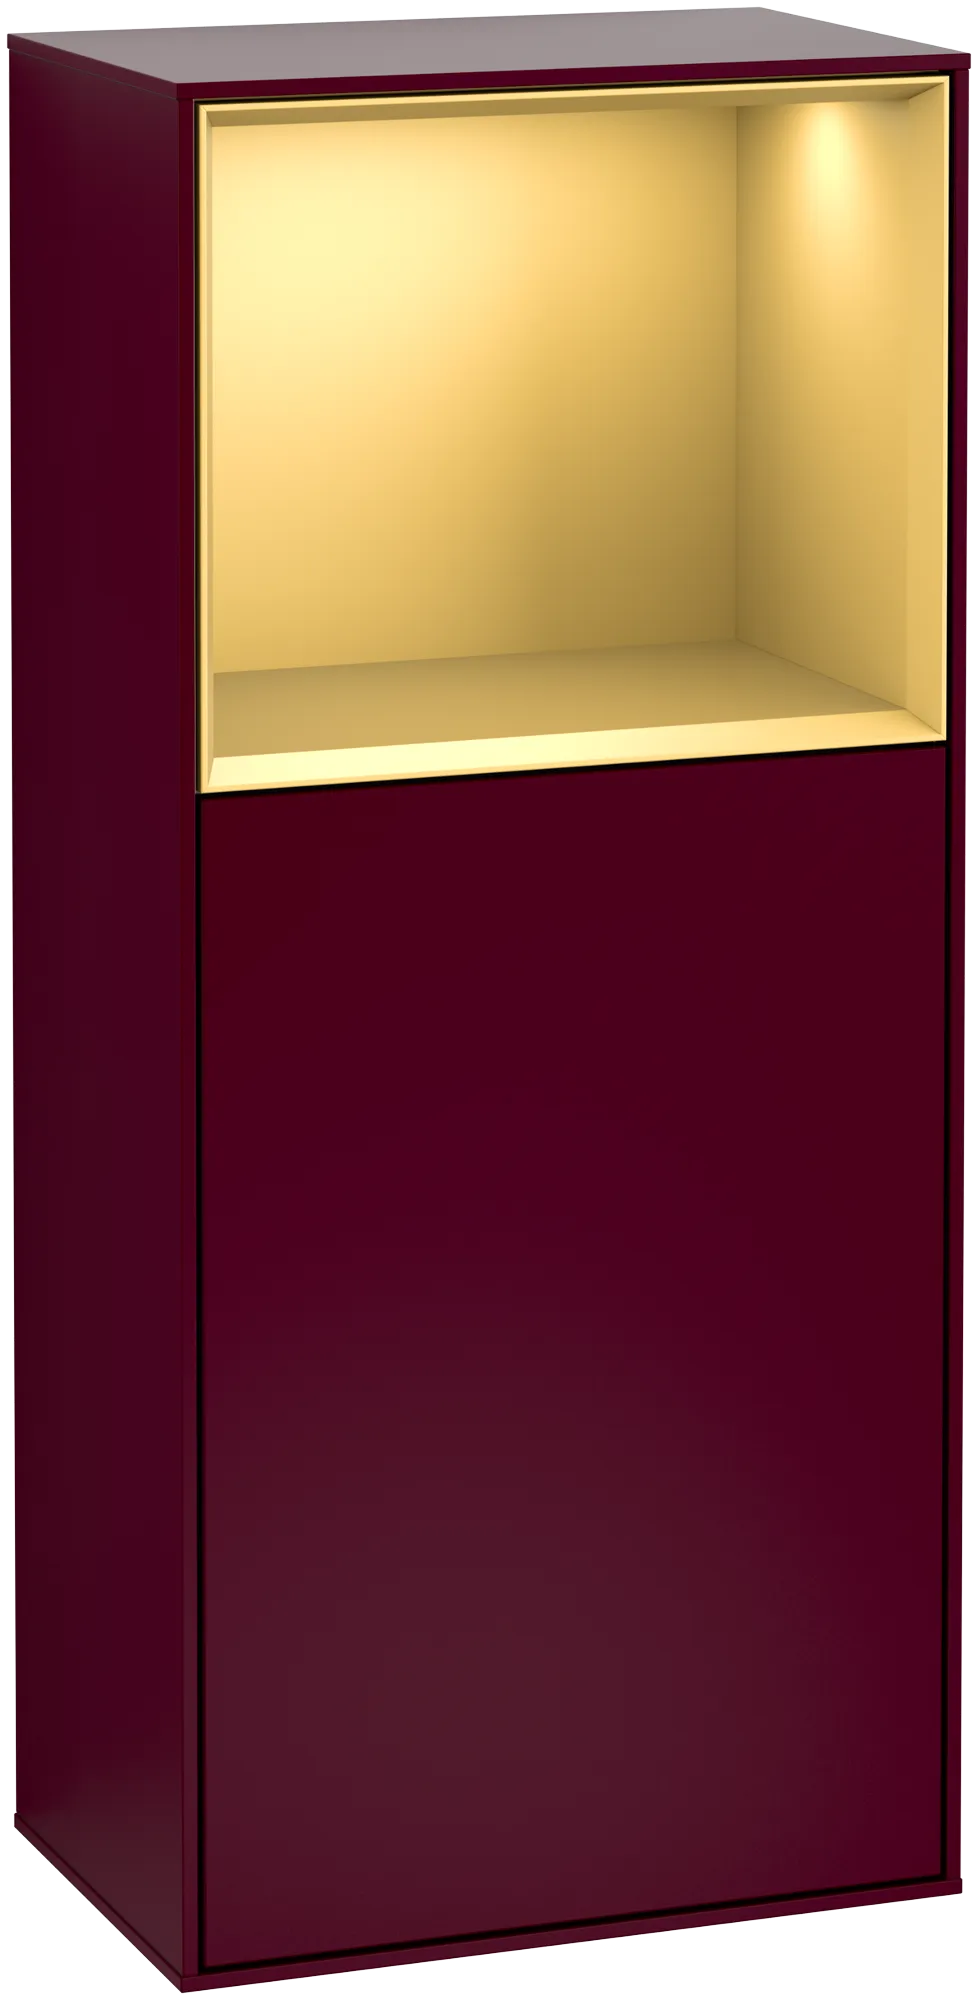 Bild von VILLEROY BOCH Finion Seitenschrank, mit Beleuchtung, 1 Tür, 418 x 936 x 270 mm, Peony Matt Lacquer / Gold Matt Lacquer #G500HFHB